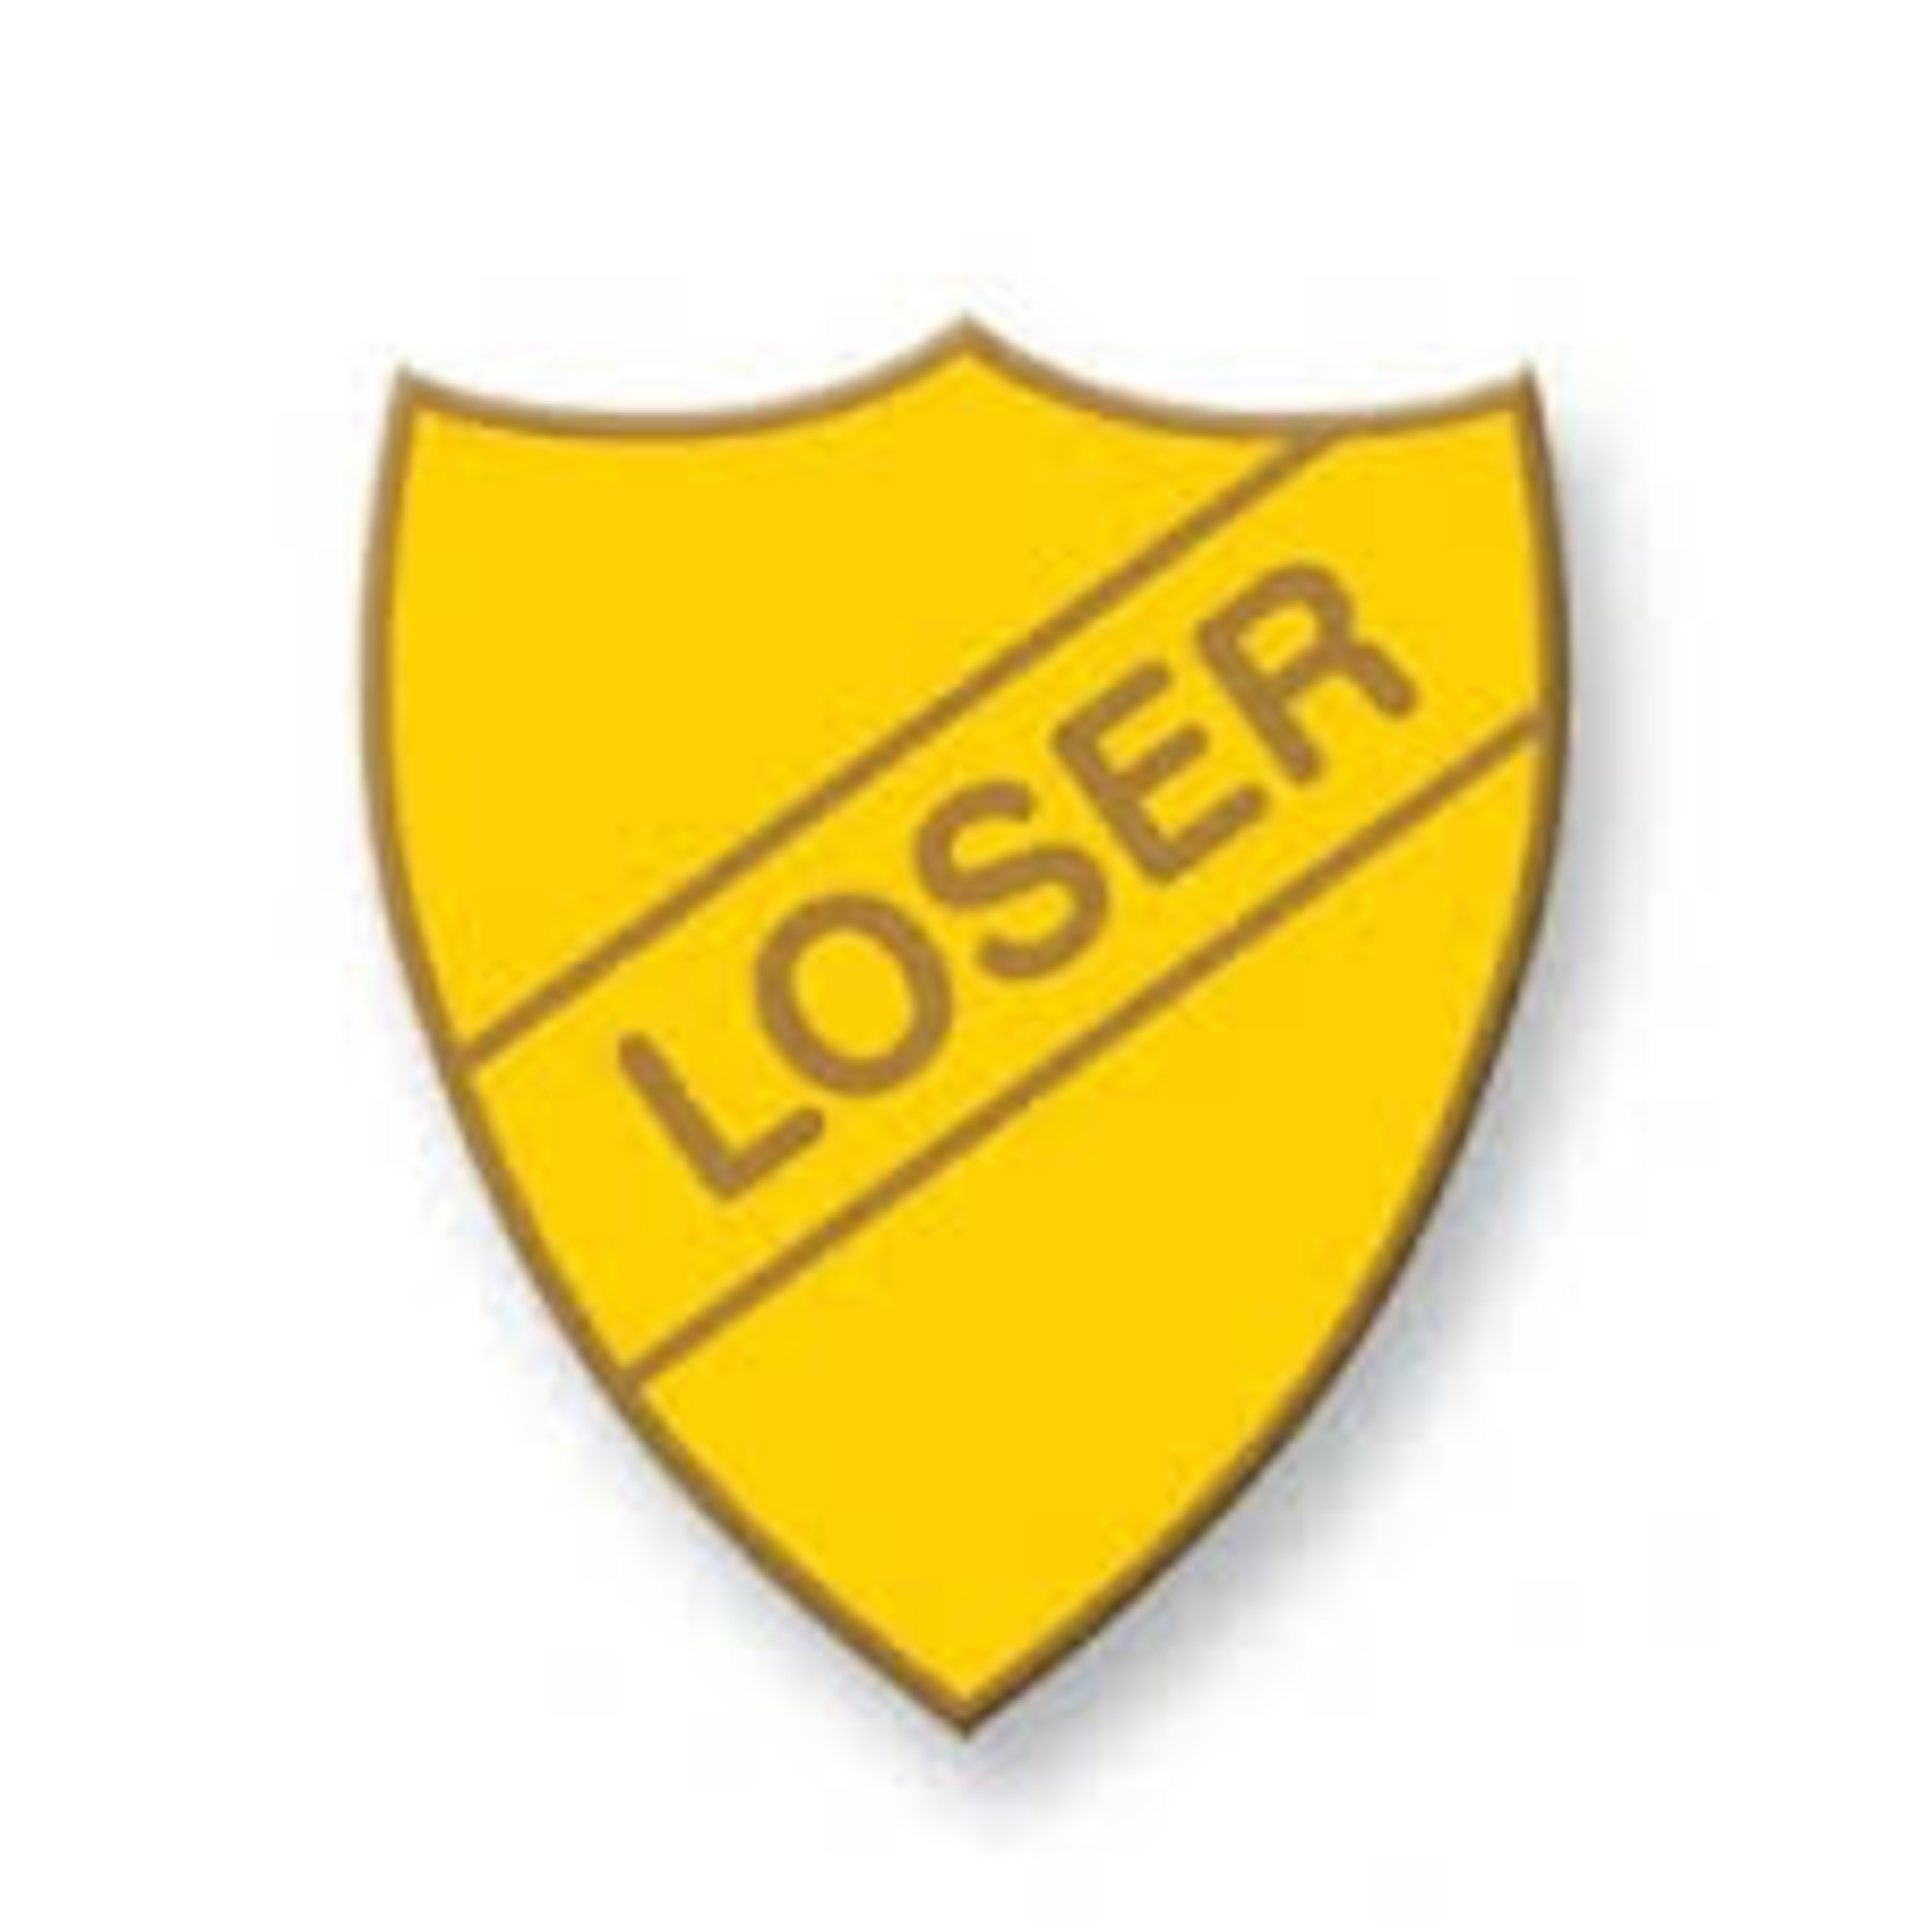 LoserCast